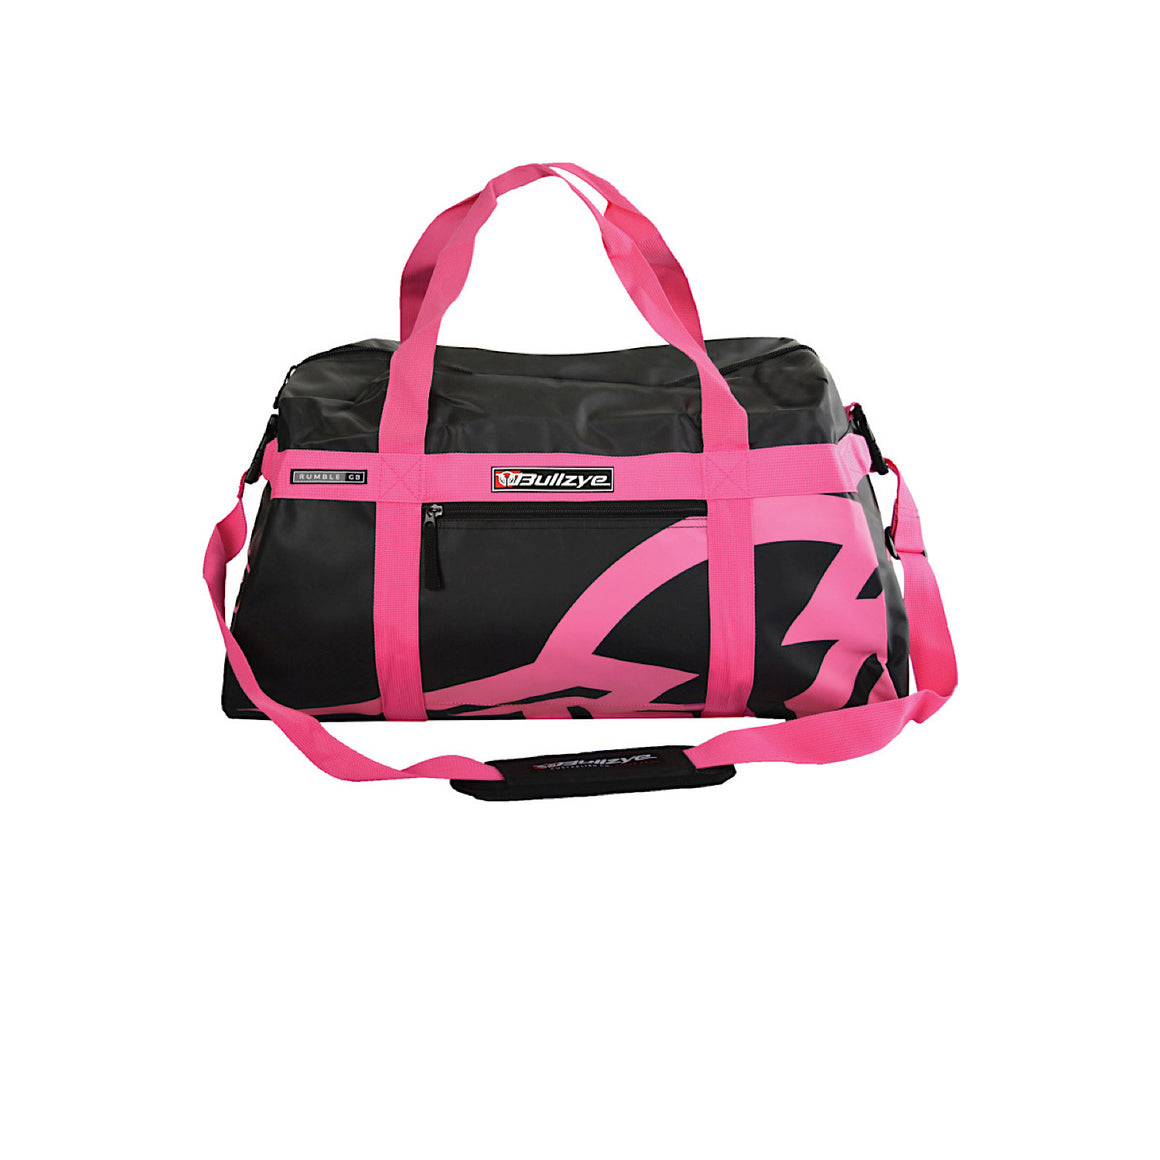 Bullzye Rumble Waterproof Gear Bag - Black/Pink